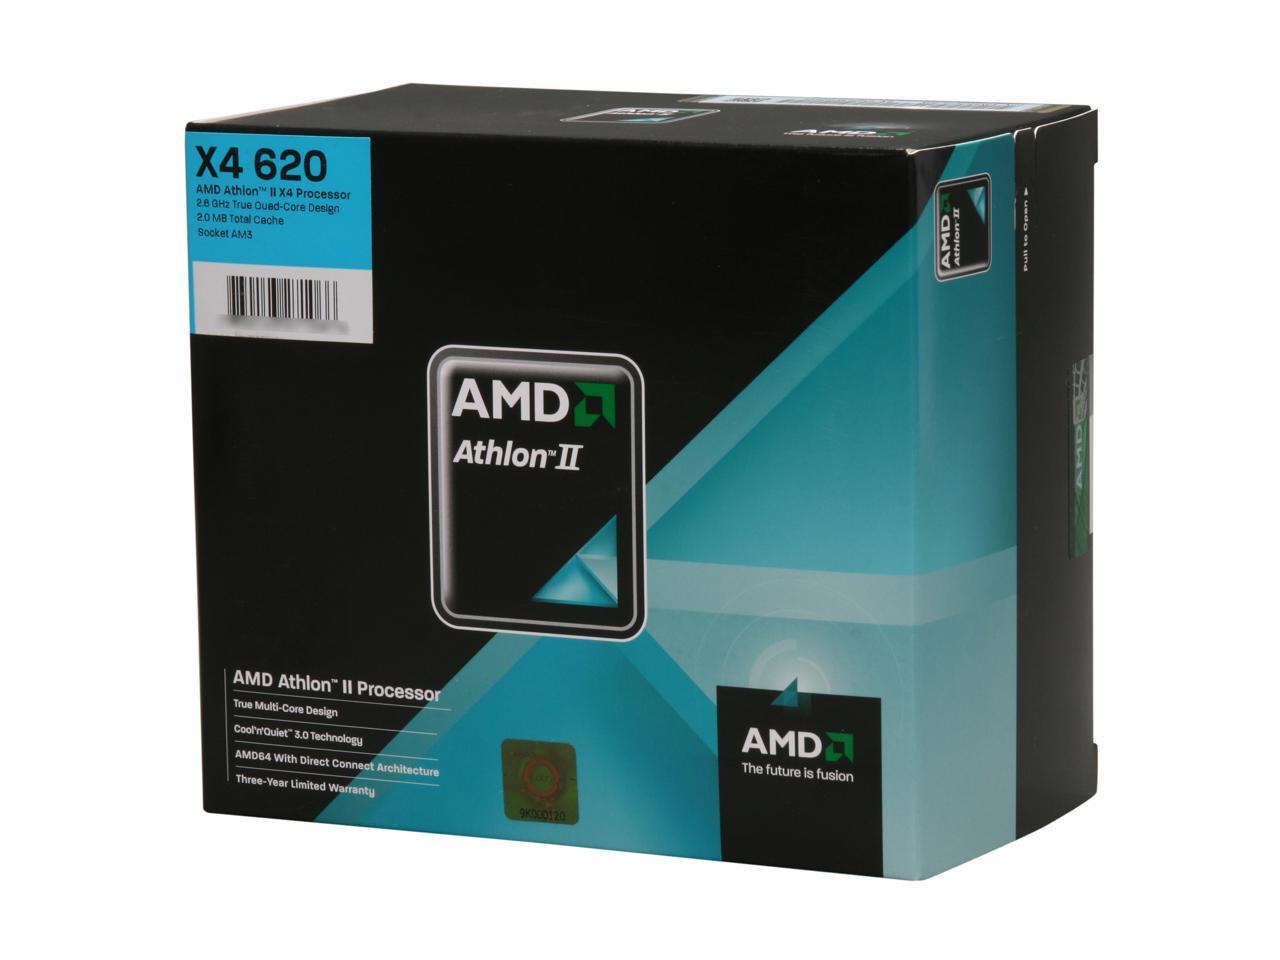 AMD Athlon II X4 620 Propus Quad-Core 2.6 GHz Socket AM3 95W ADX620WFGIBOX Processor